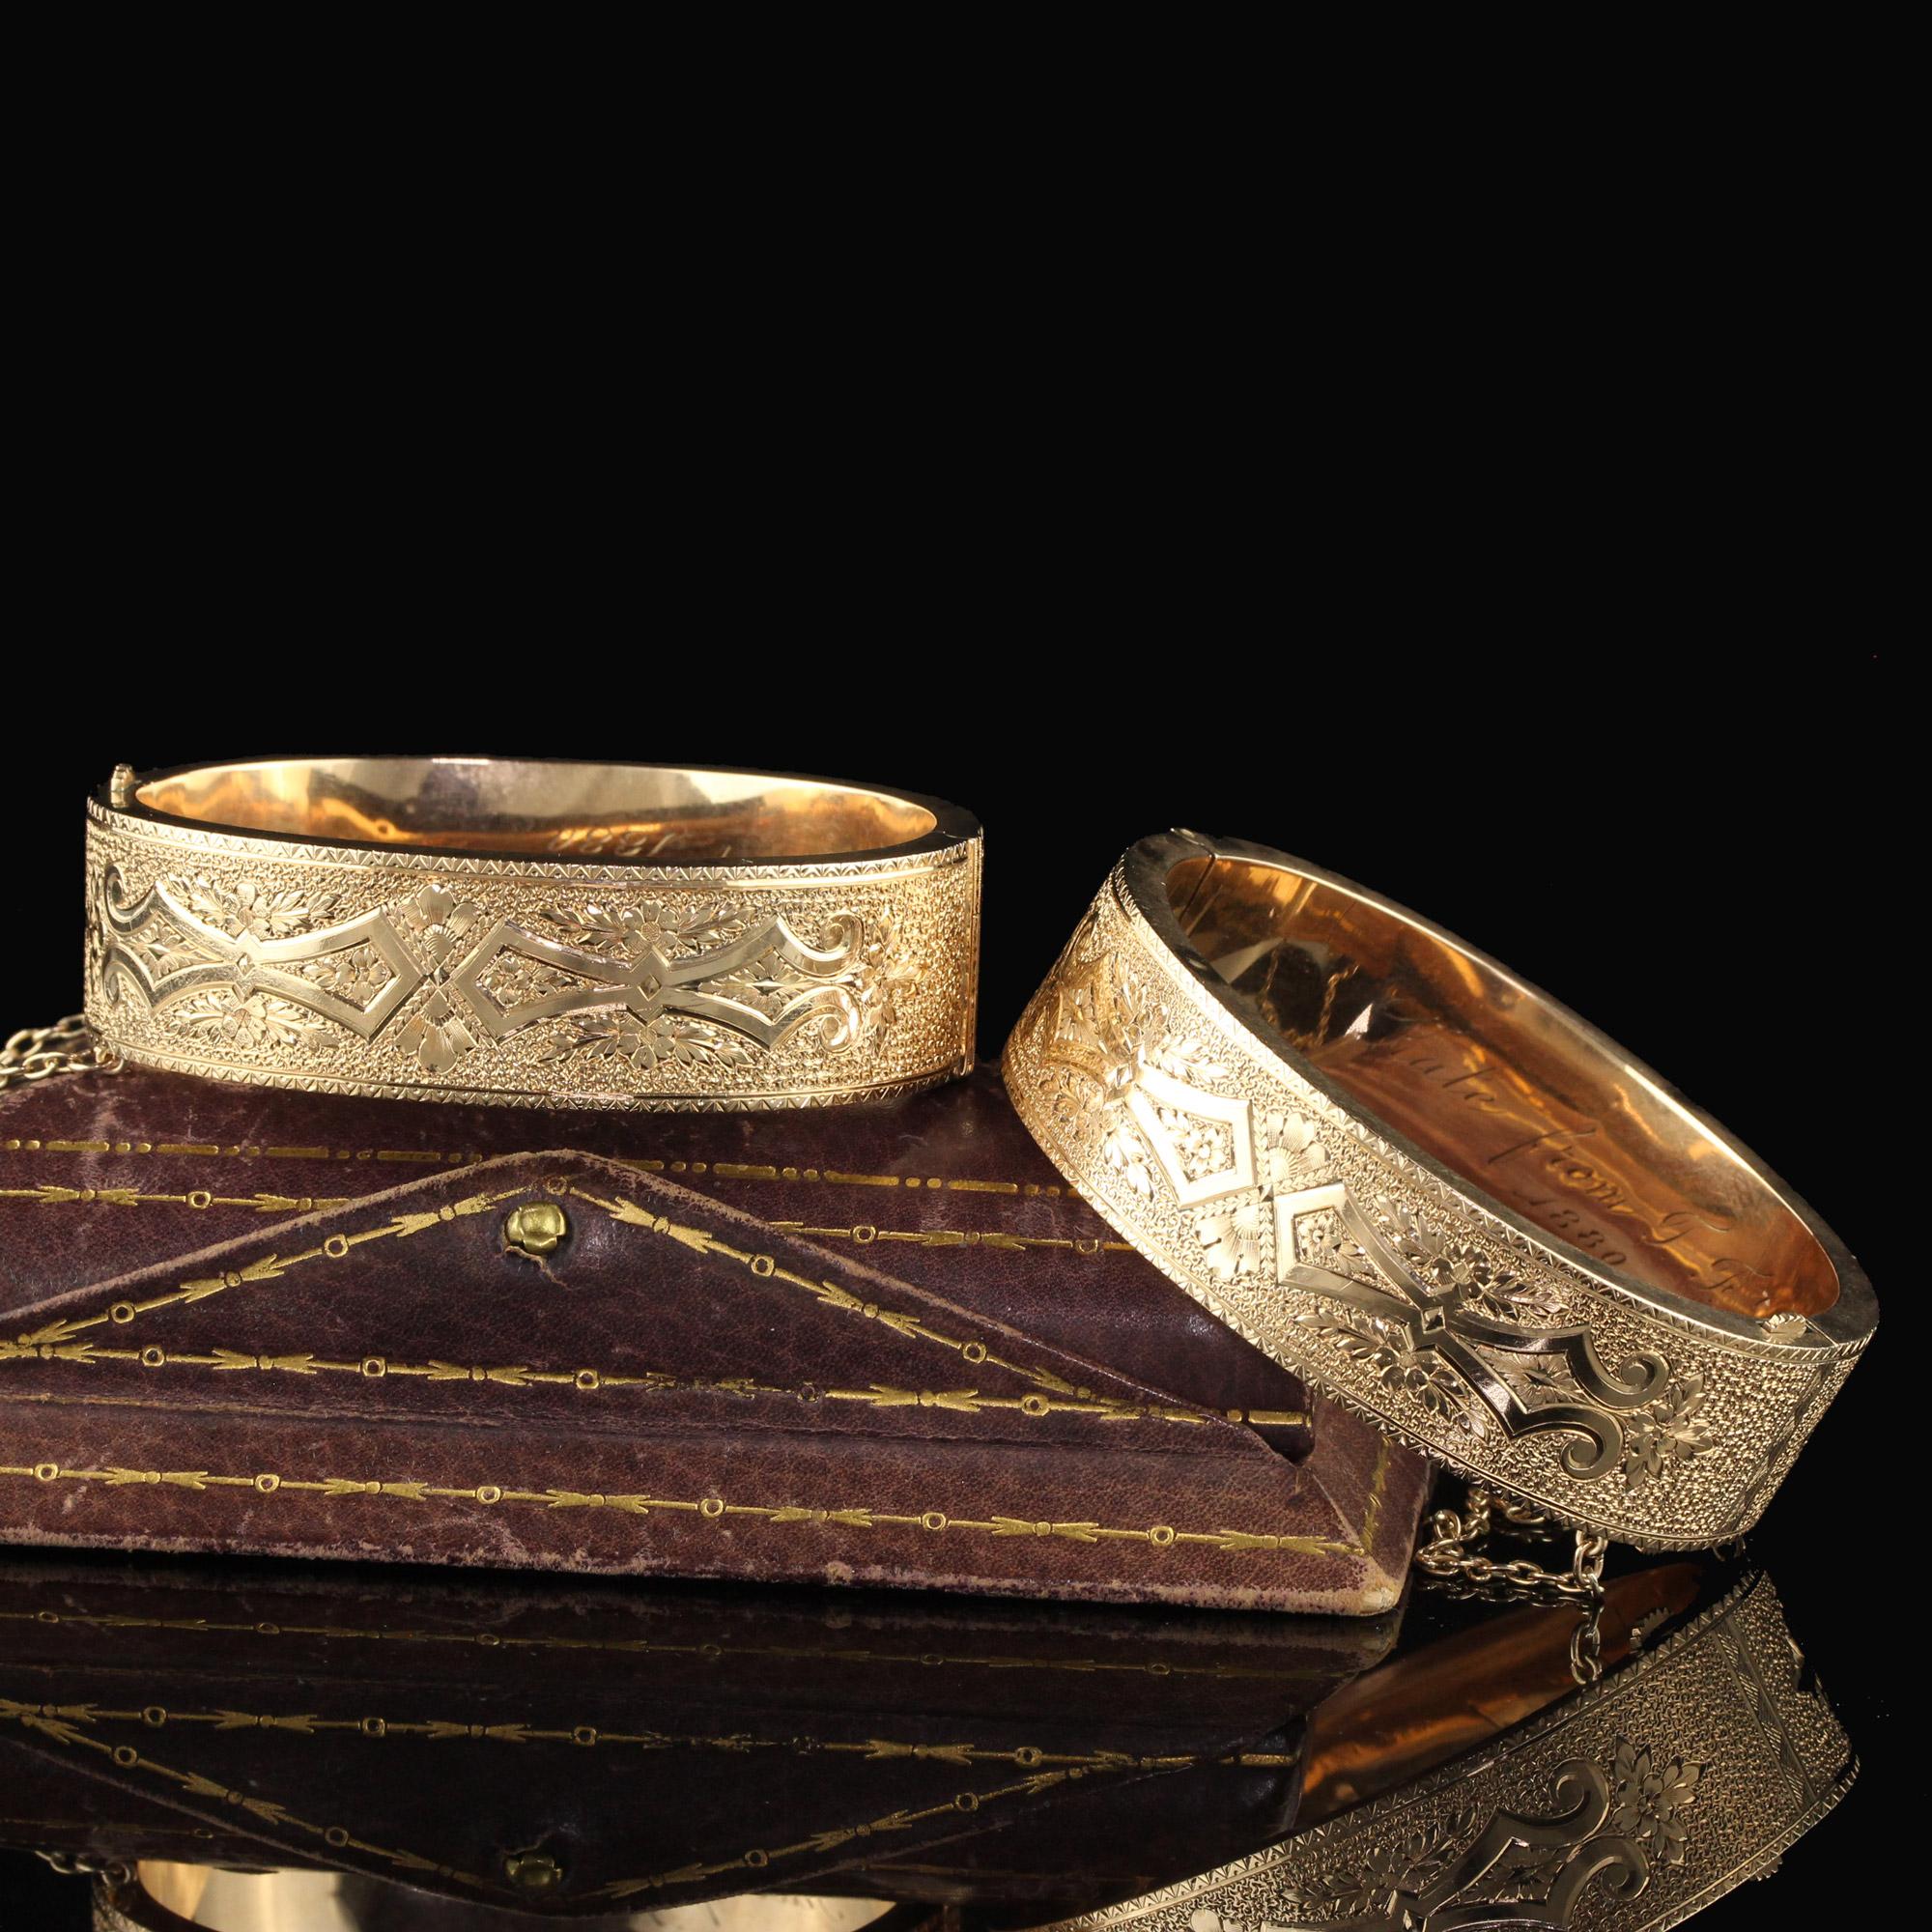 14k solid gold bangle bracelet set